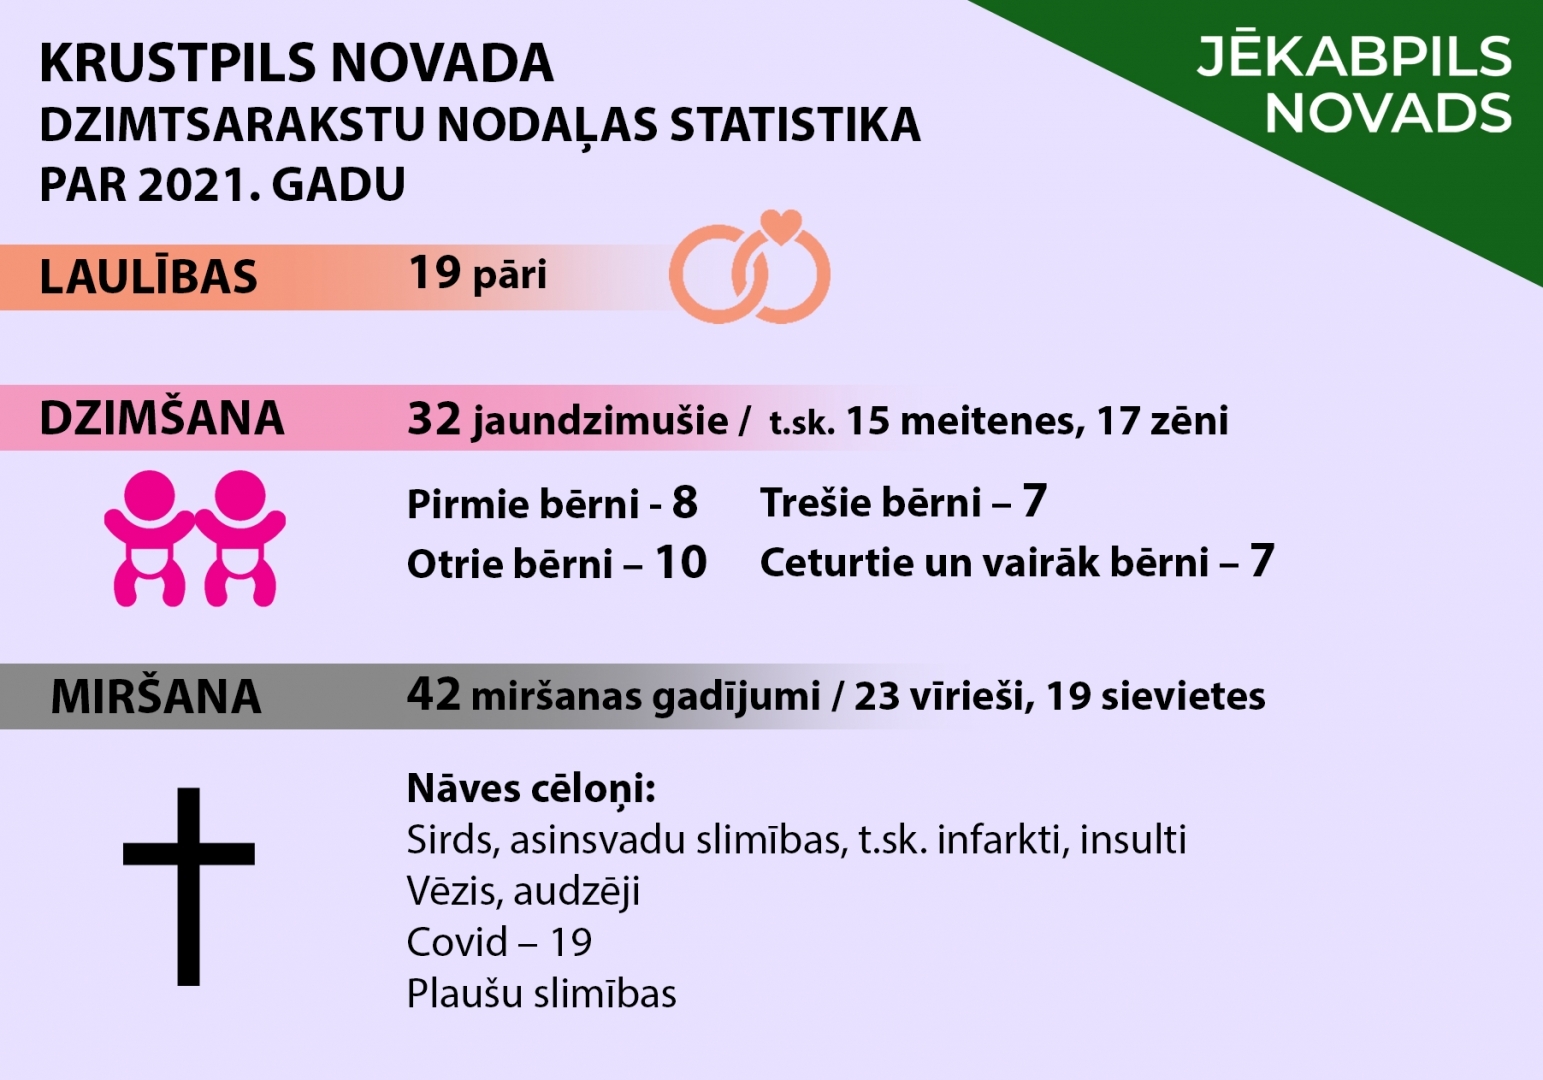 Krustpils novada dzimtsarakstu nodaļas statistika par 2021. gadu